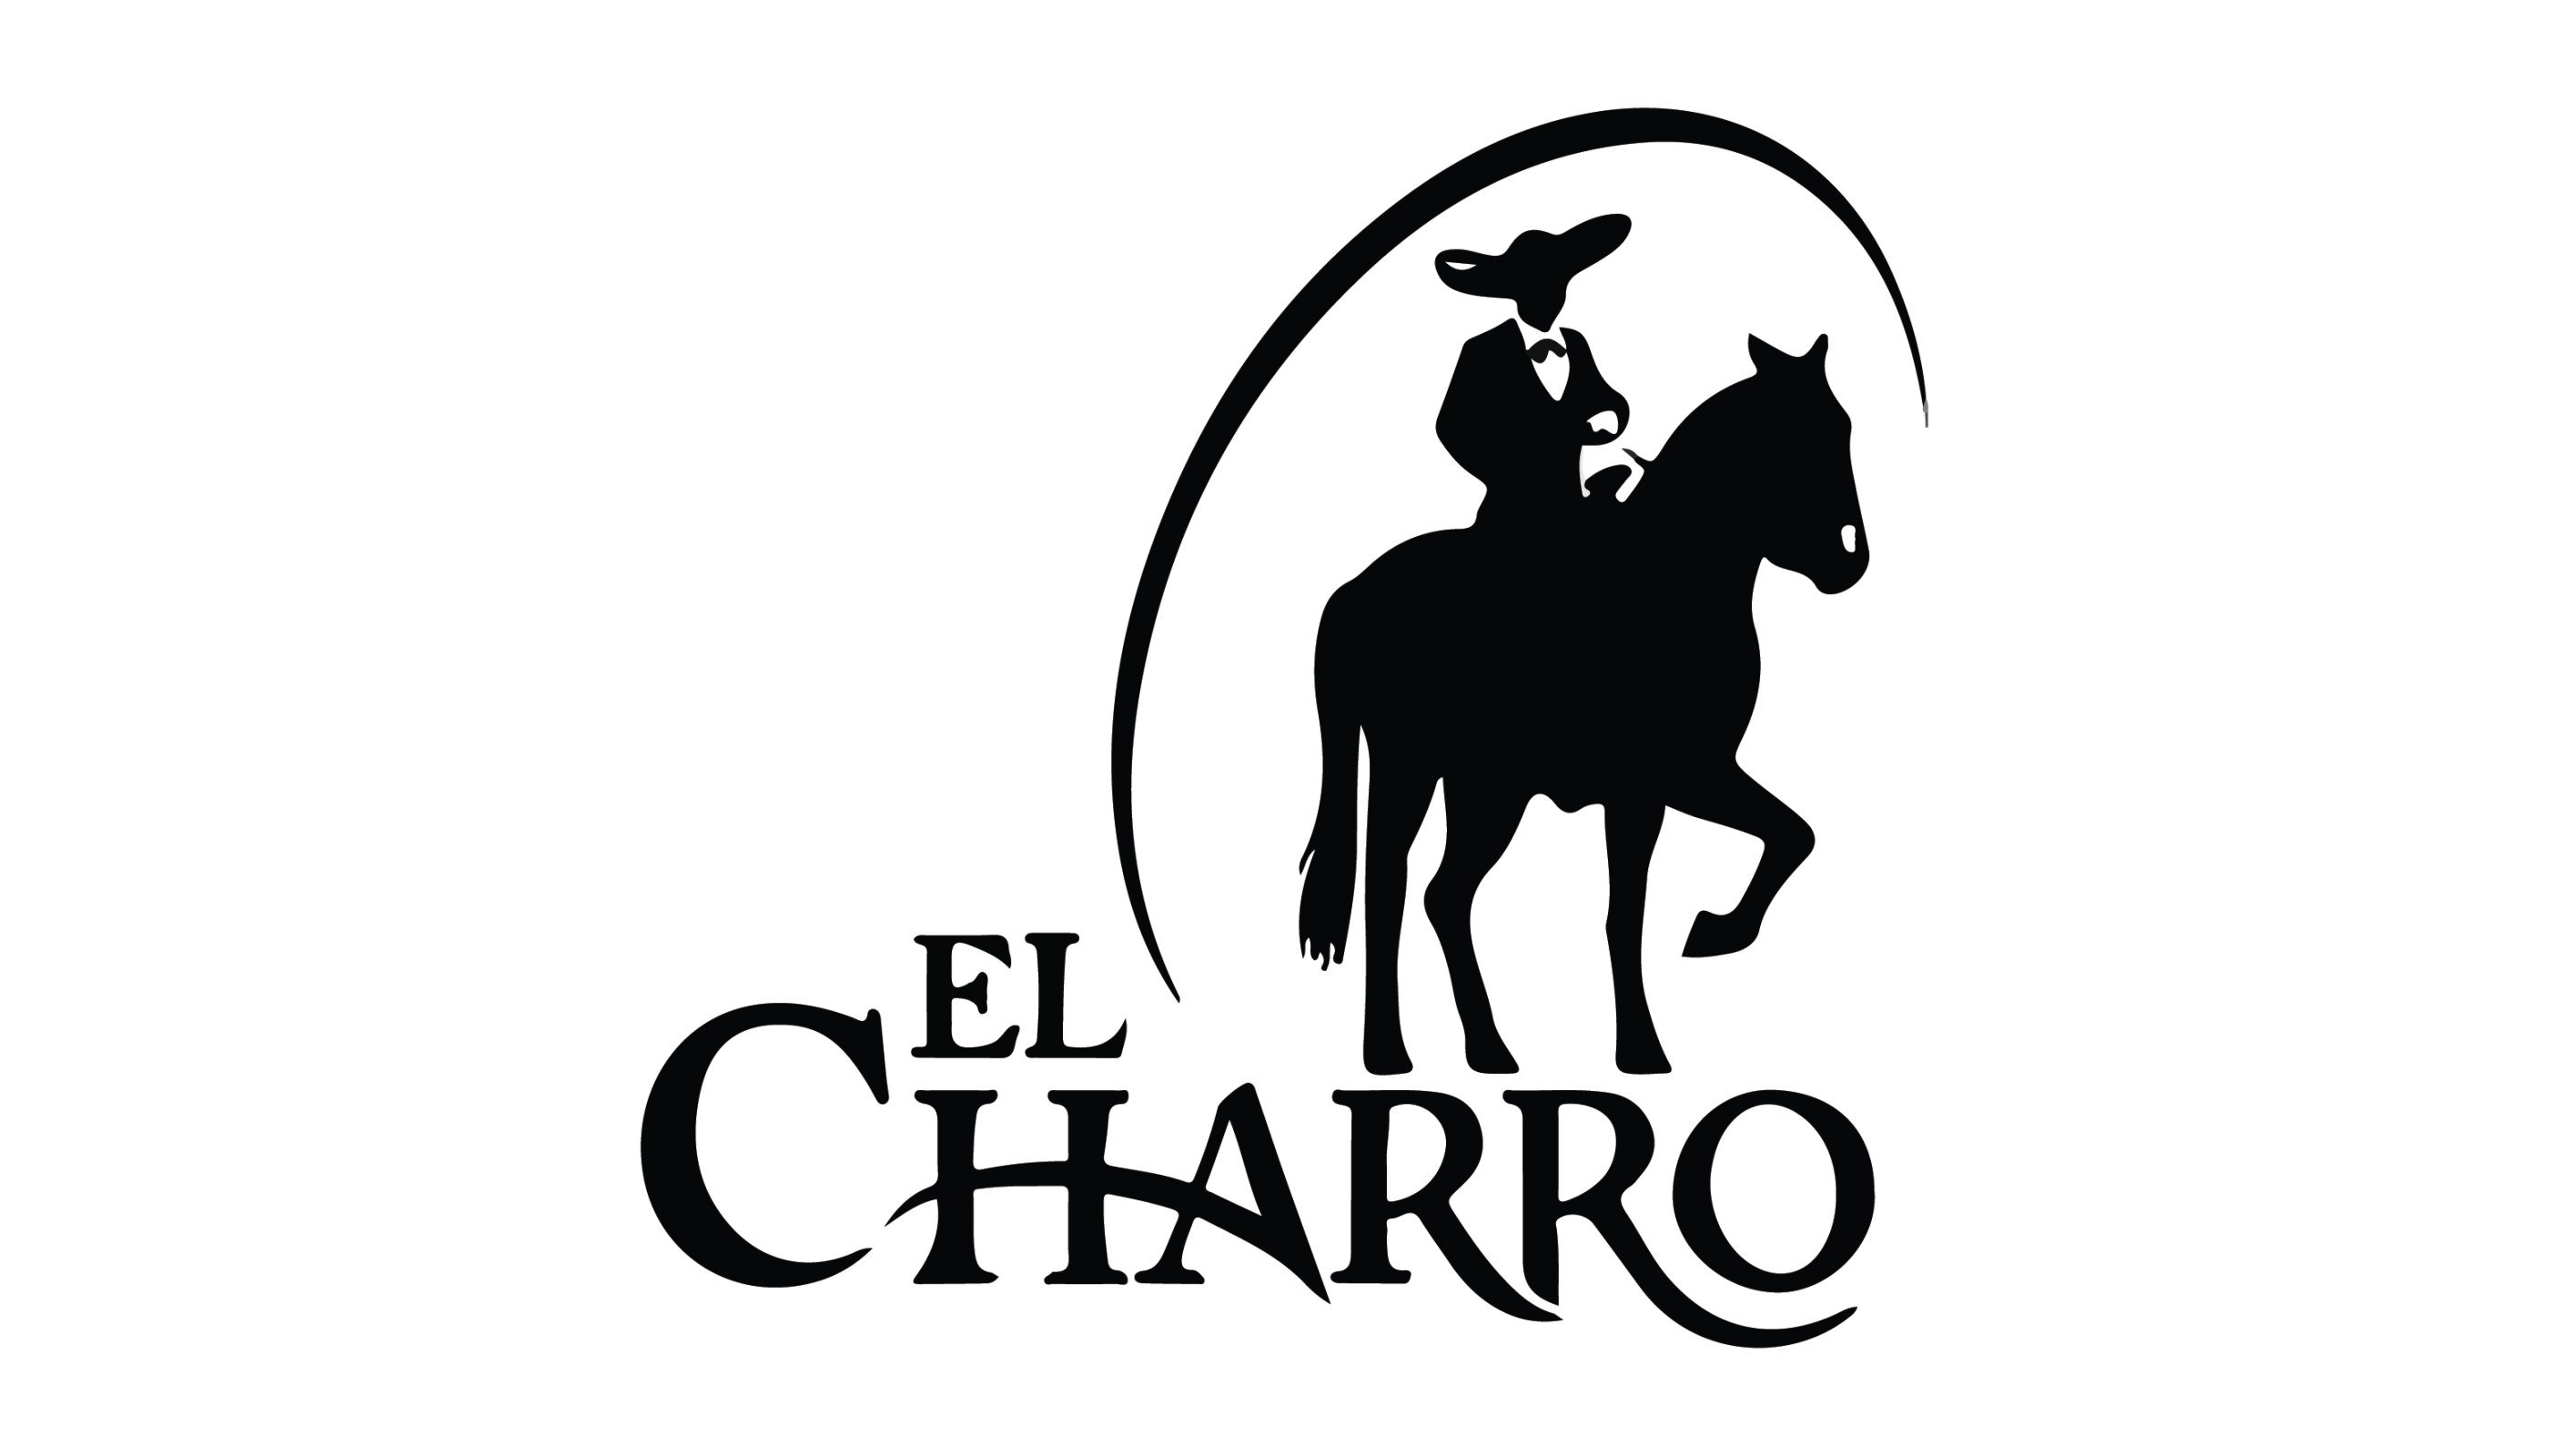 El Charro's Image